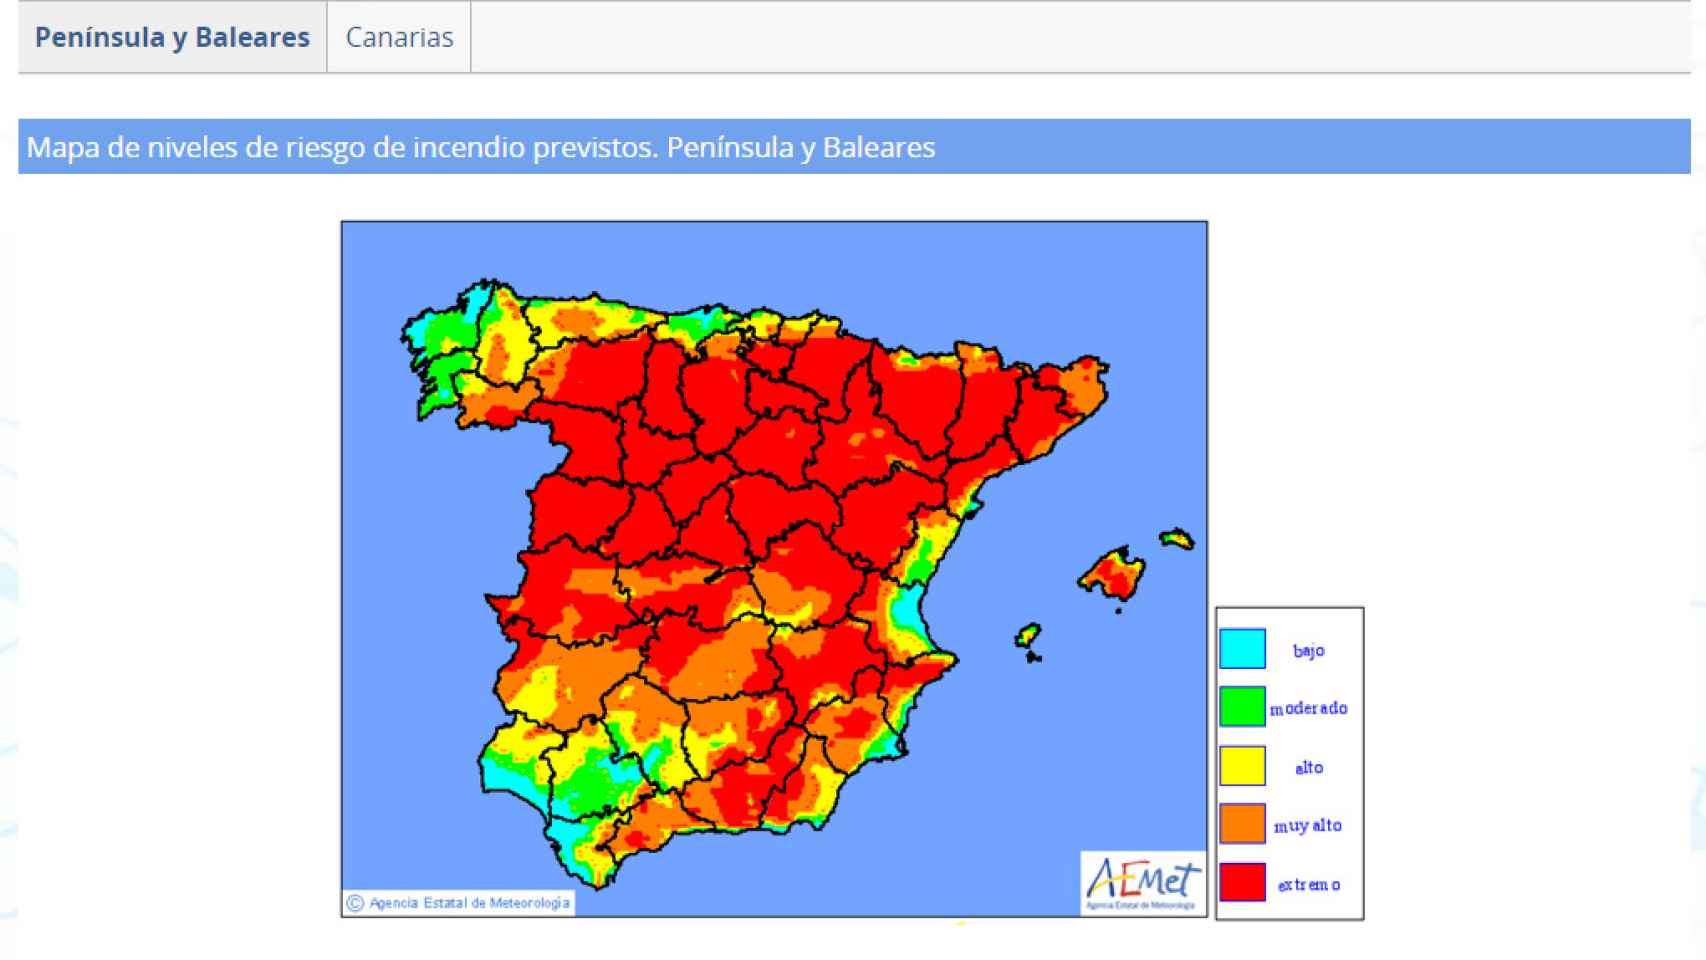 Mapa de riesgo de incendios forestales elaborado para esta semana por la Agencia Española de Meteorología (Aemet).